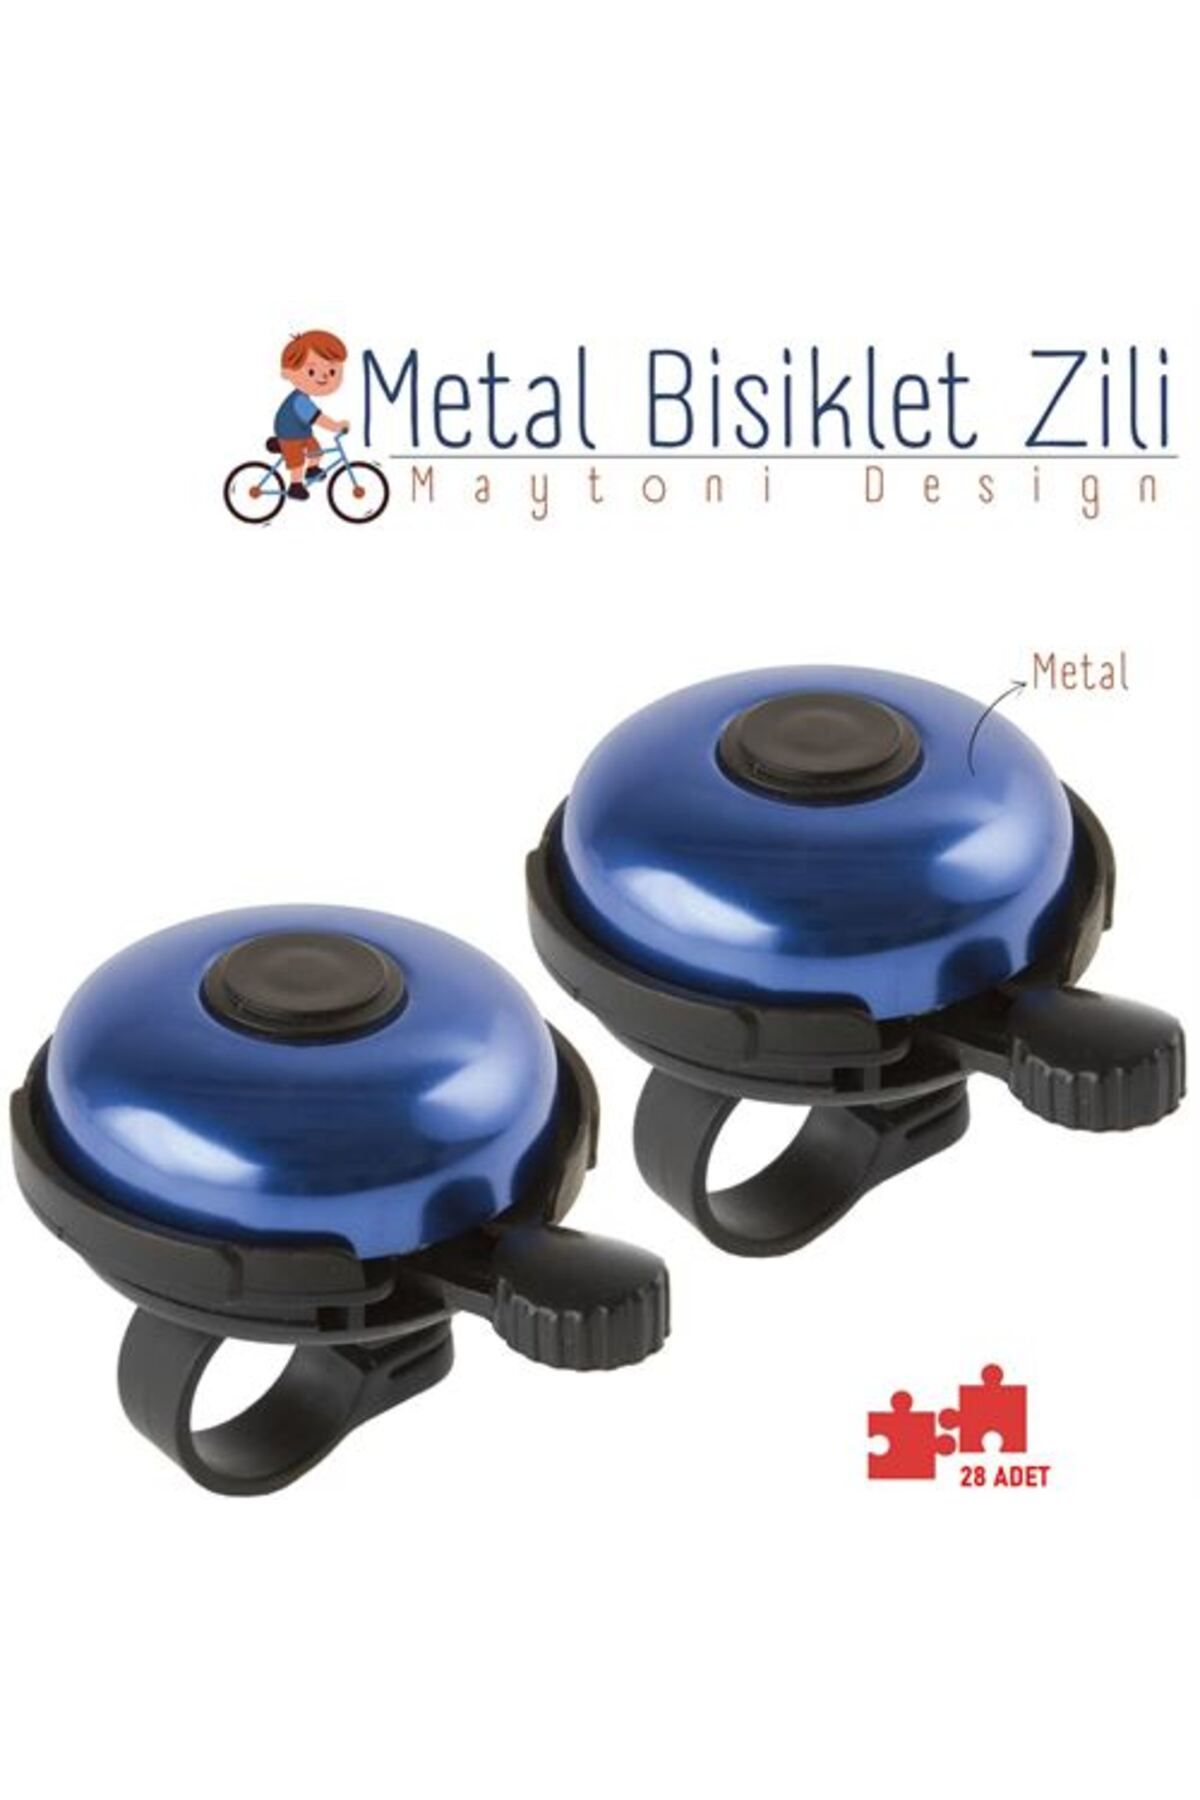 ModaCar Bisiklet Zili 12 ADET Metal Maytoni Design 429044